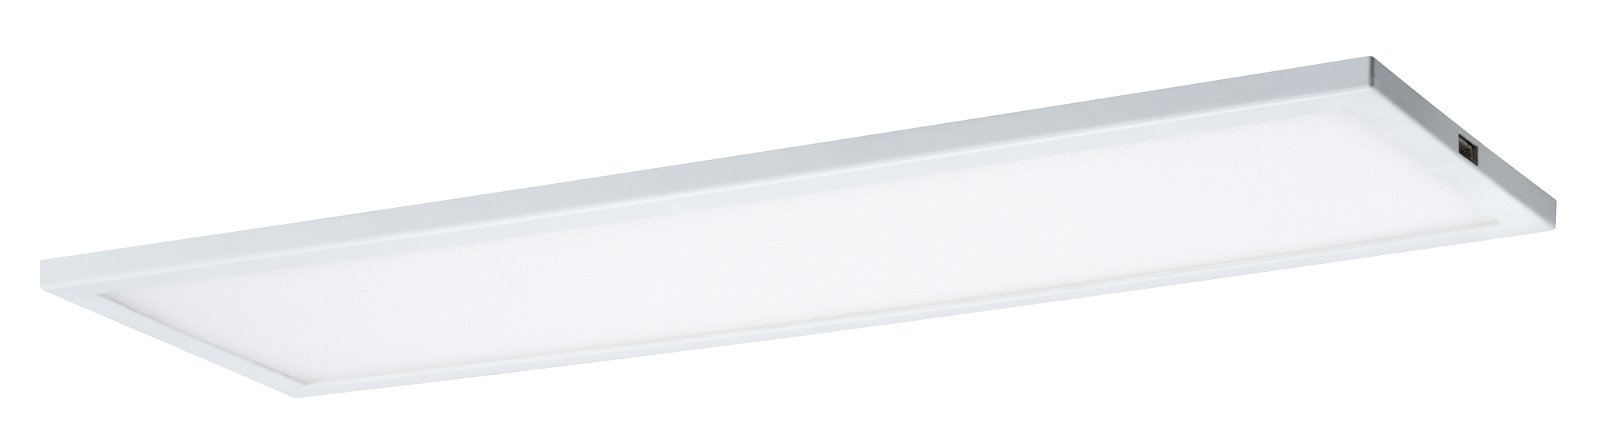 LED Unterschrankleuchte Ace eckig 300x7mm 520lm 2700K Weiß/Satin dimmbar